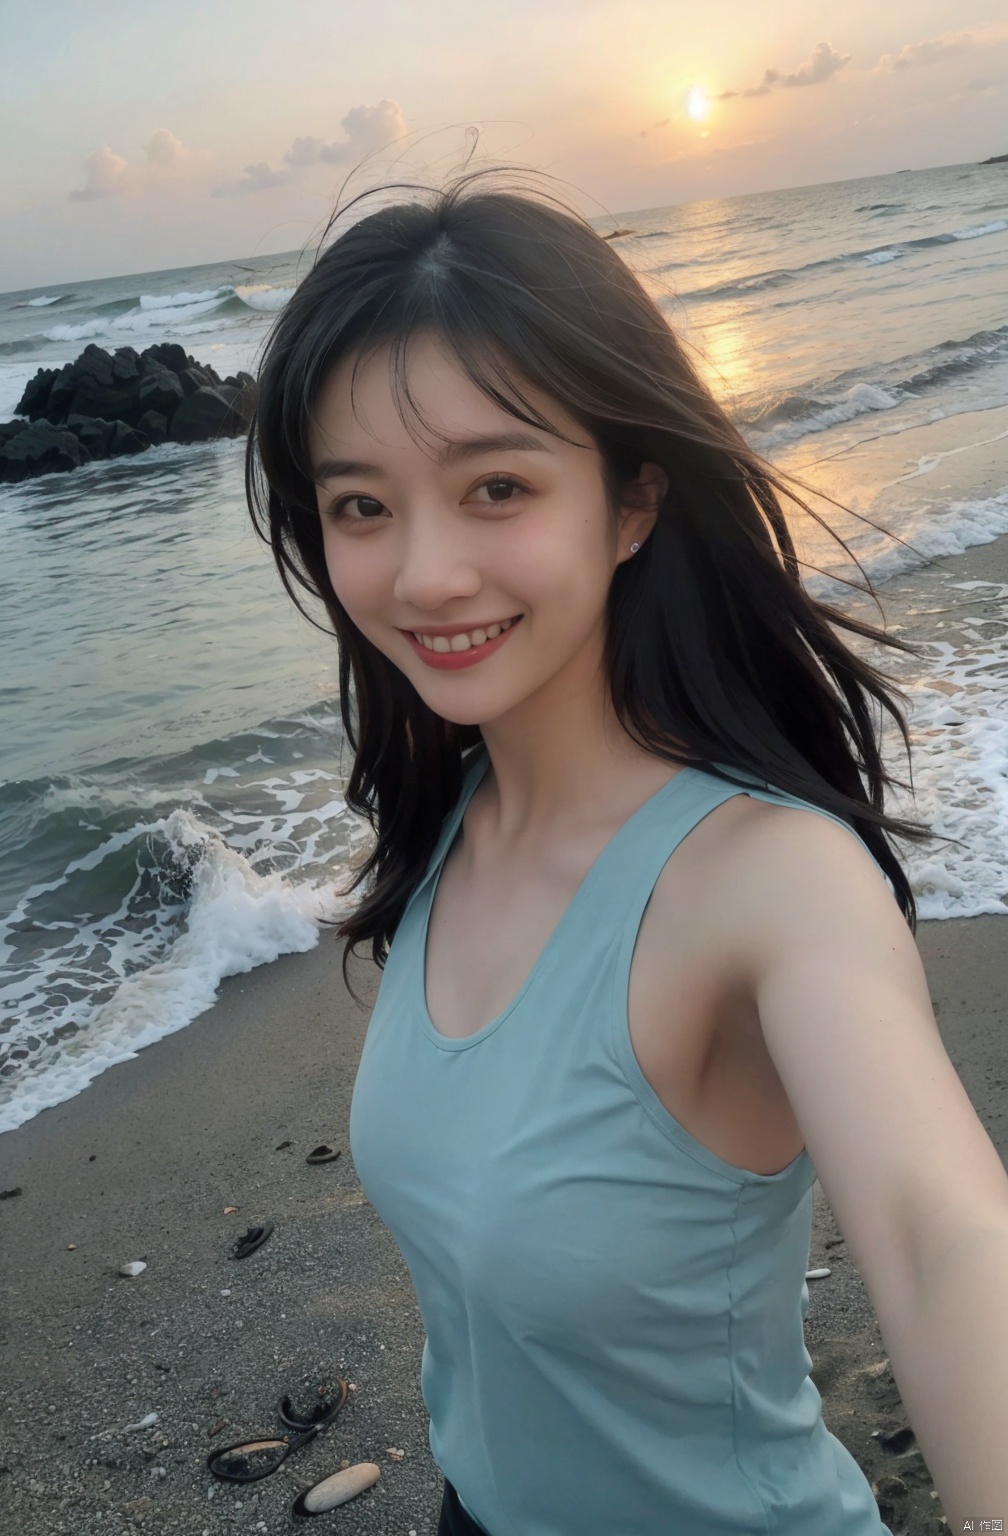  1 Girl, Selfie, Sea, Wind, Messy Hair, Sunset, Beach, (Aesthetics & Atmosphere: 1.2), Black **** Top, Smile,naked